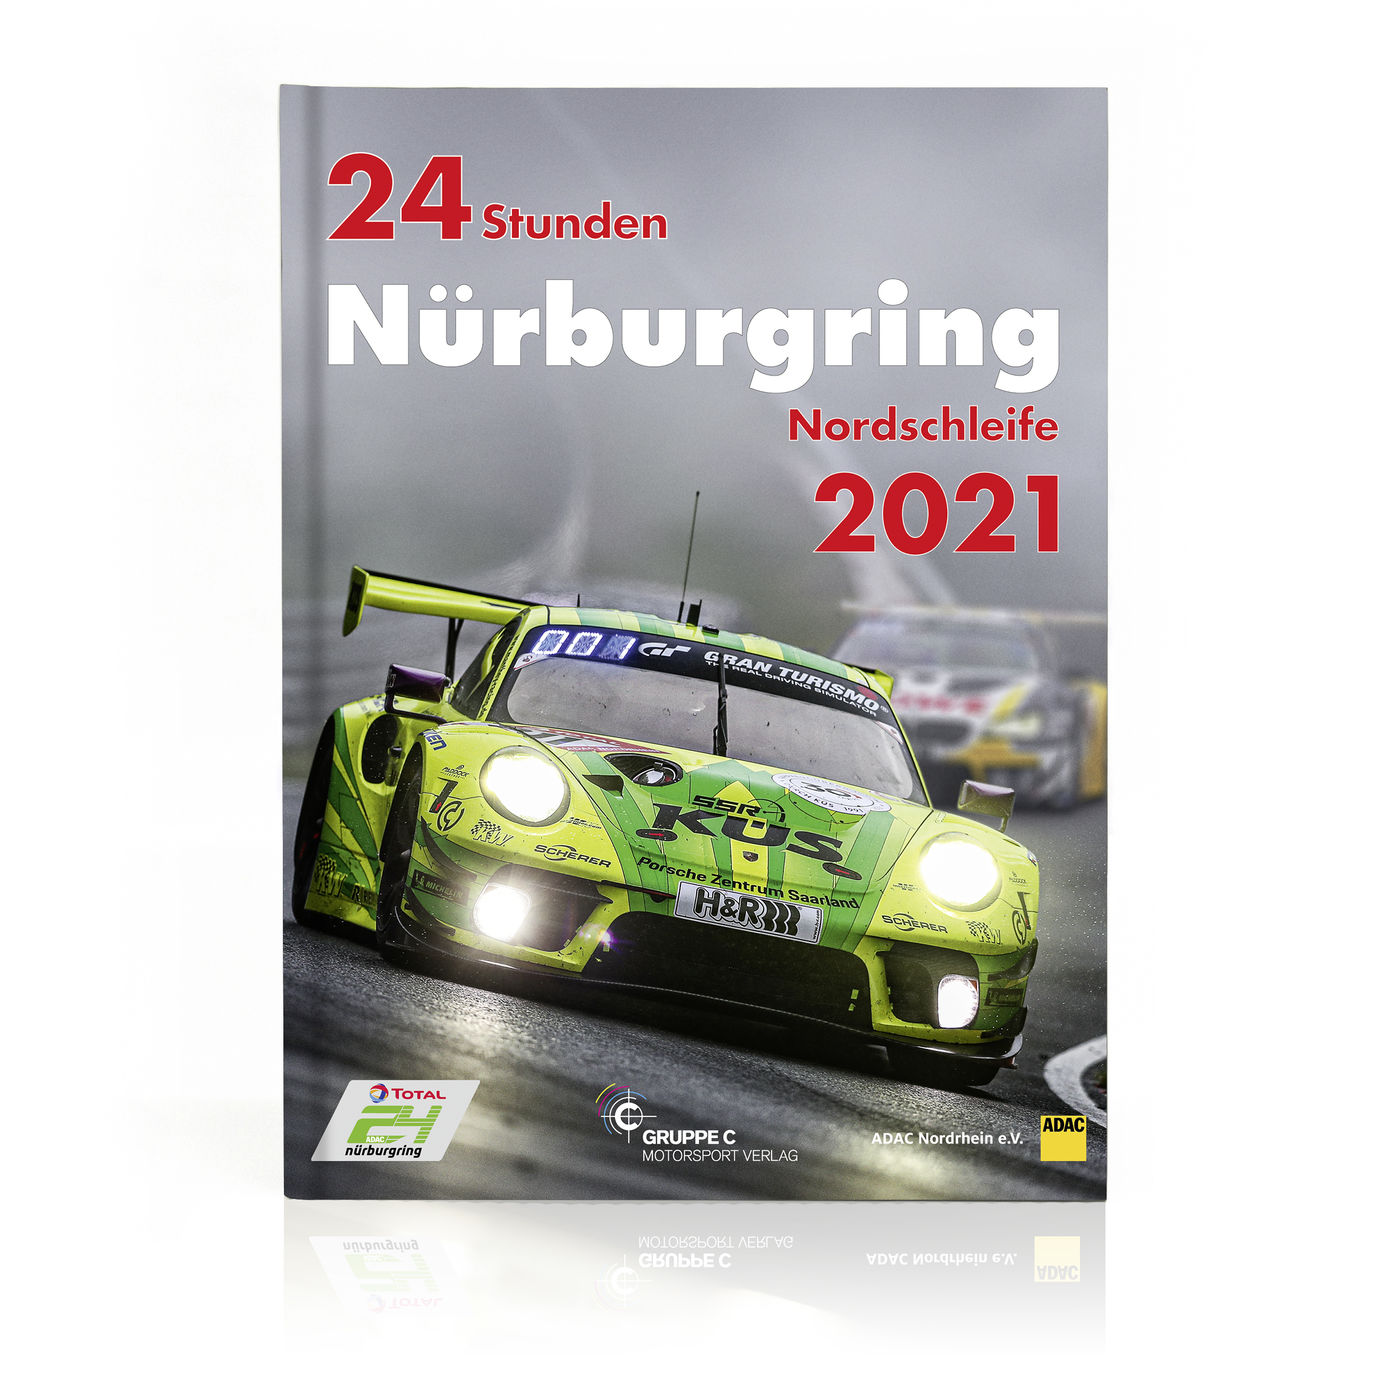 24 Stunden Nürburgring
24h Nürburgring
24h Nürburgring